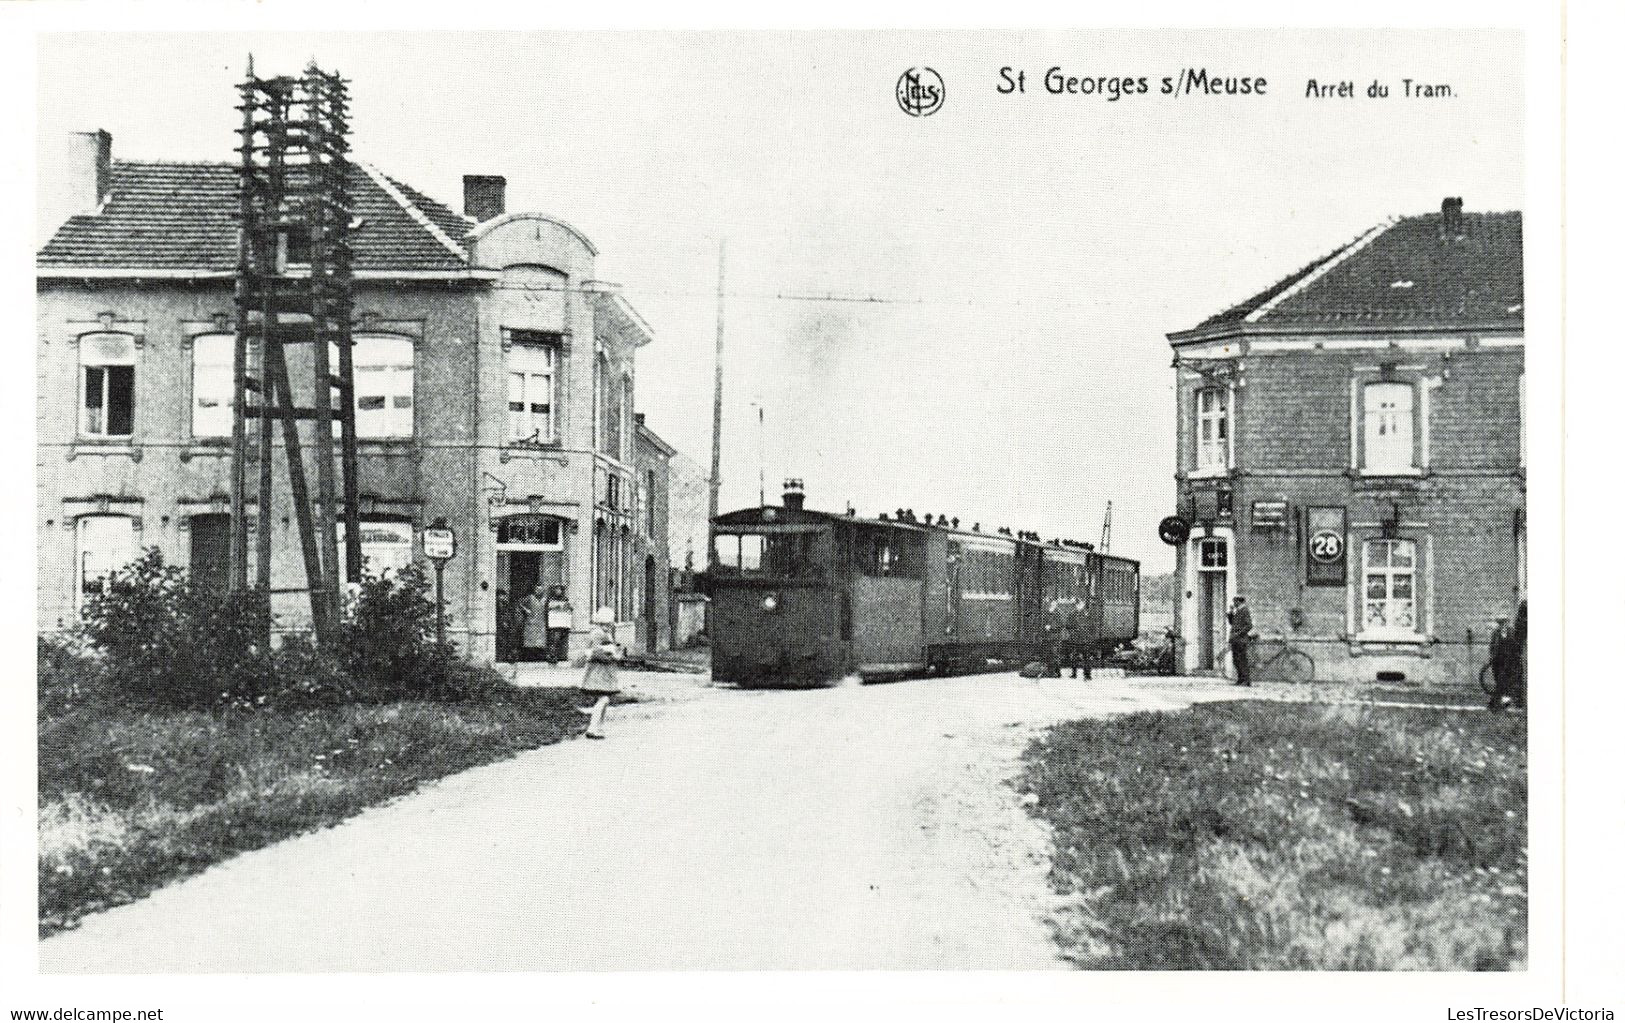 Belgique - Lot de 14 Cartes de Stockay Saint Georges - 75ème anniversaire de l'union 1908 1983 - C. Postale Ancienne